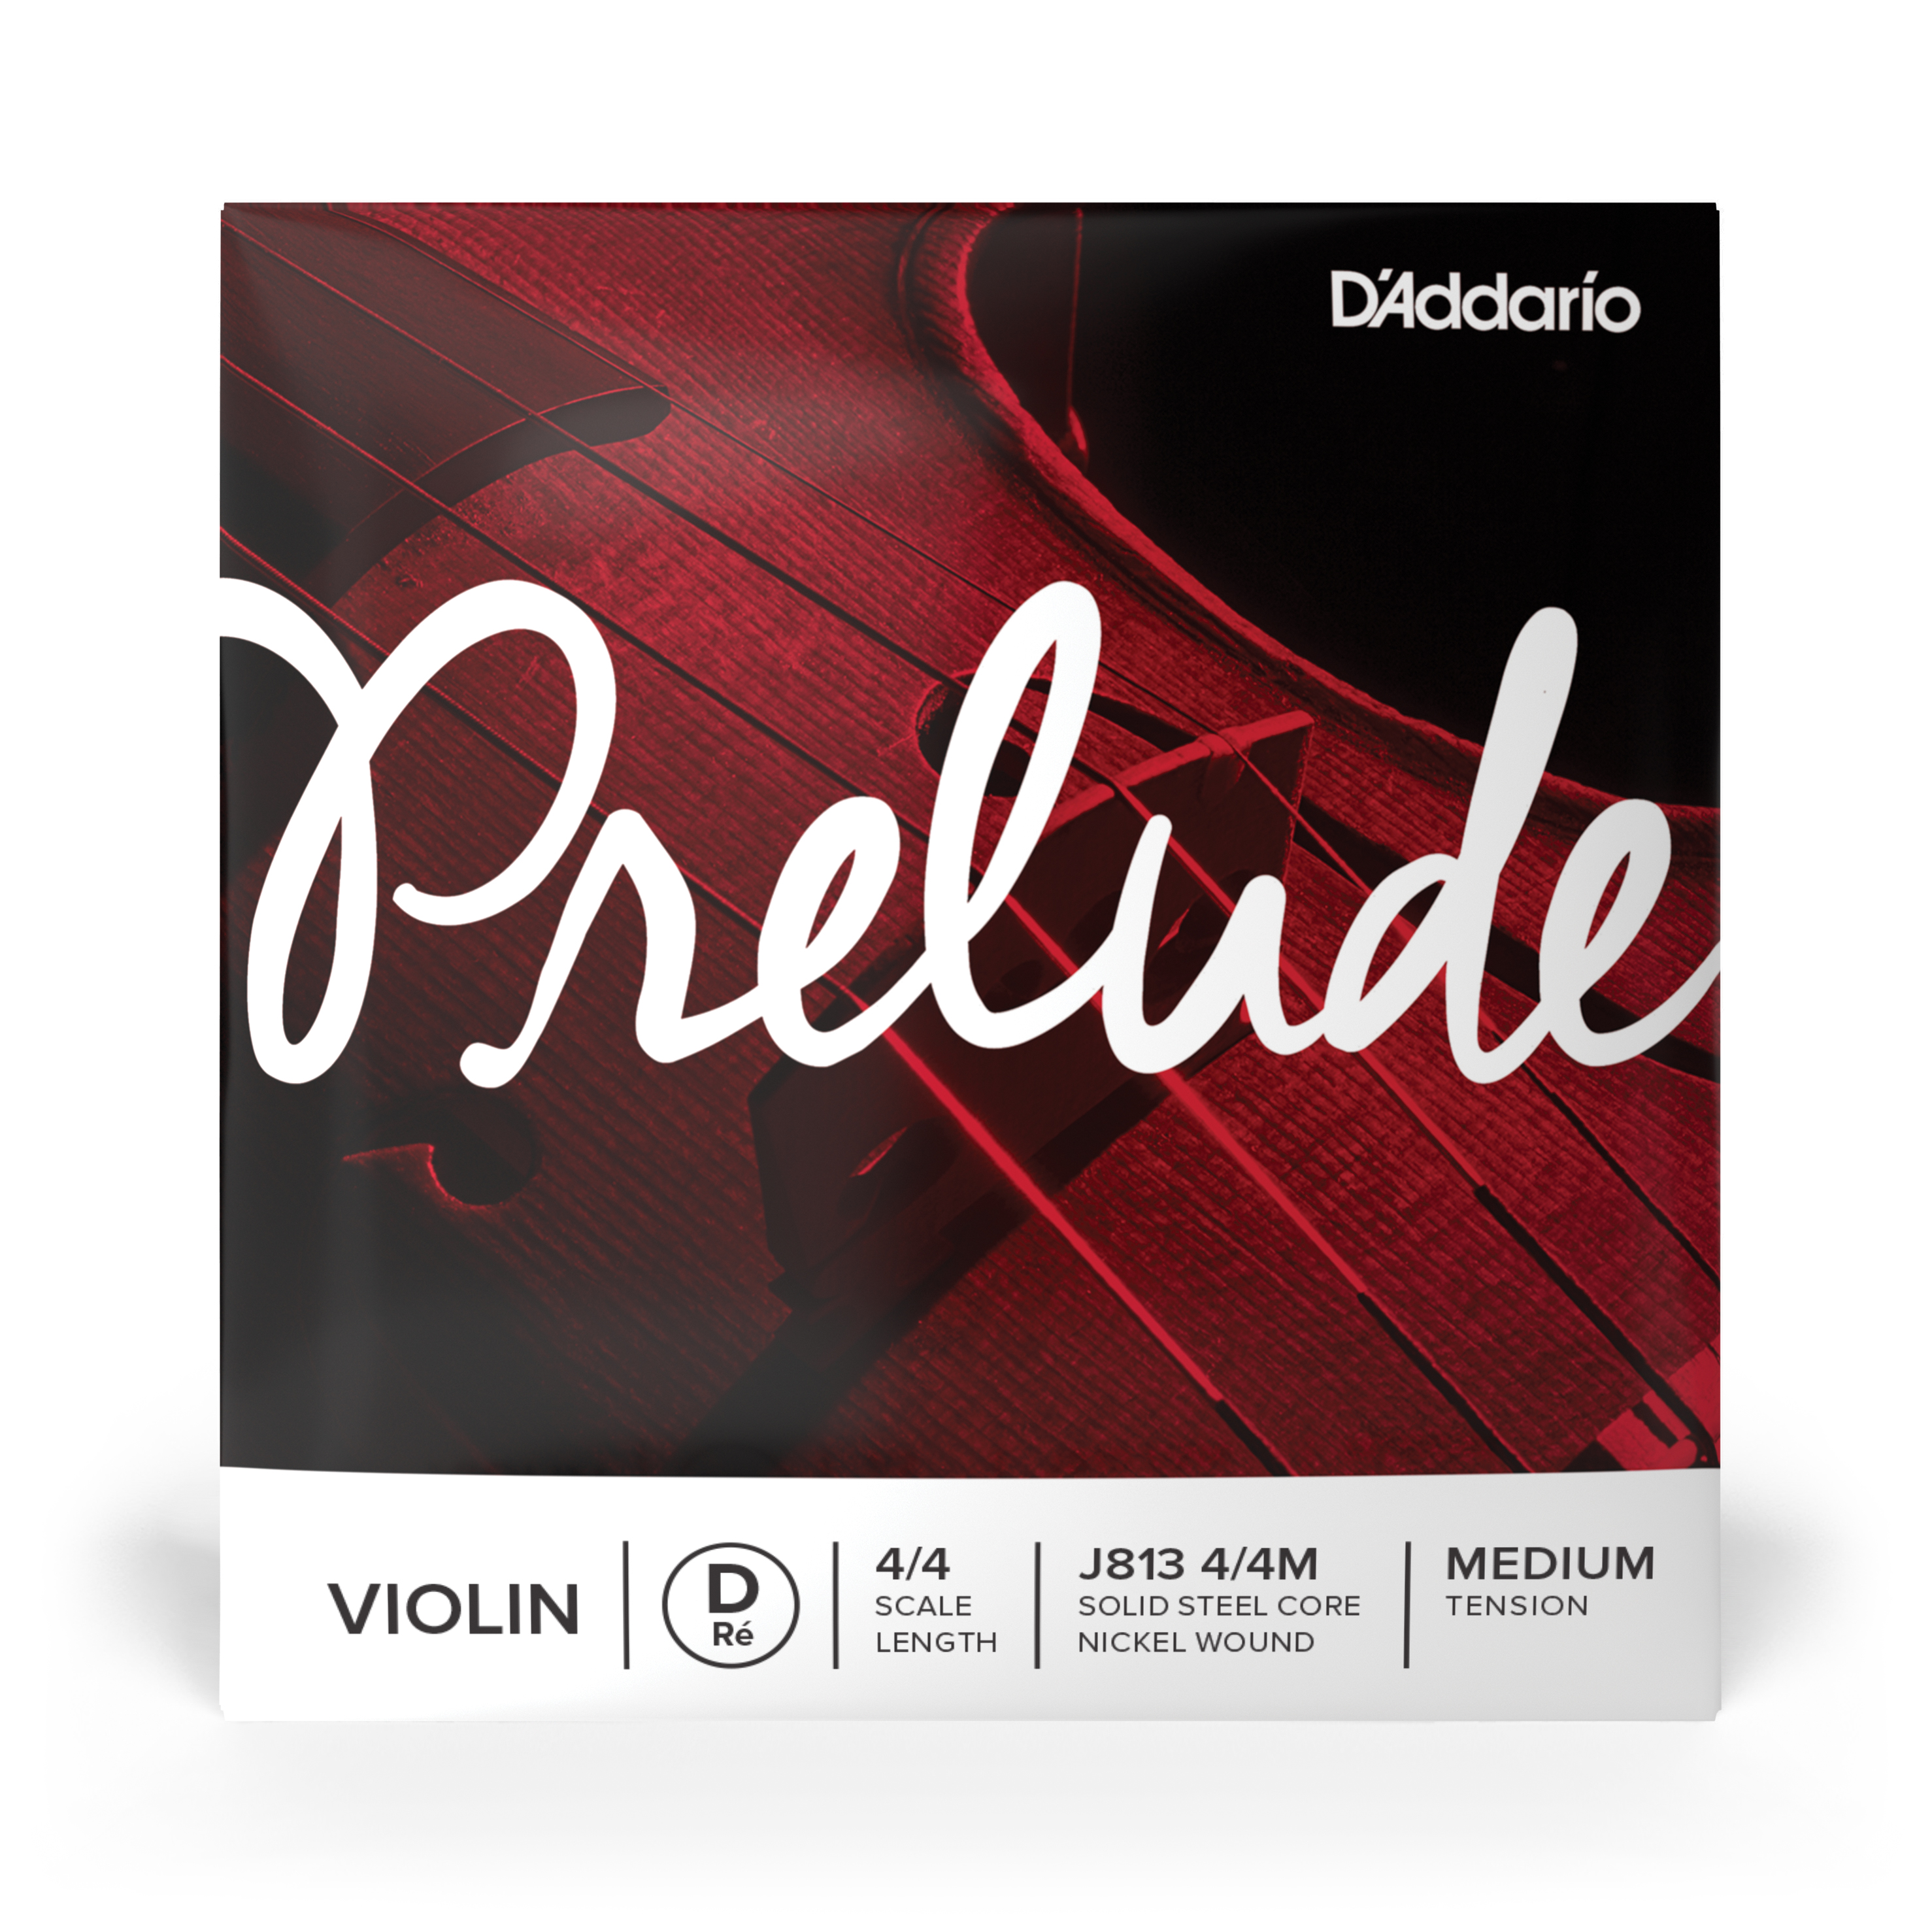 Daddario orchestral it J813 4/4m corda singola re d'addario prelude per violino, scala 4/4, tensione media